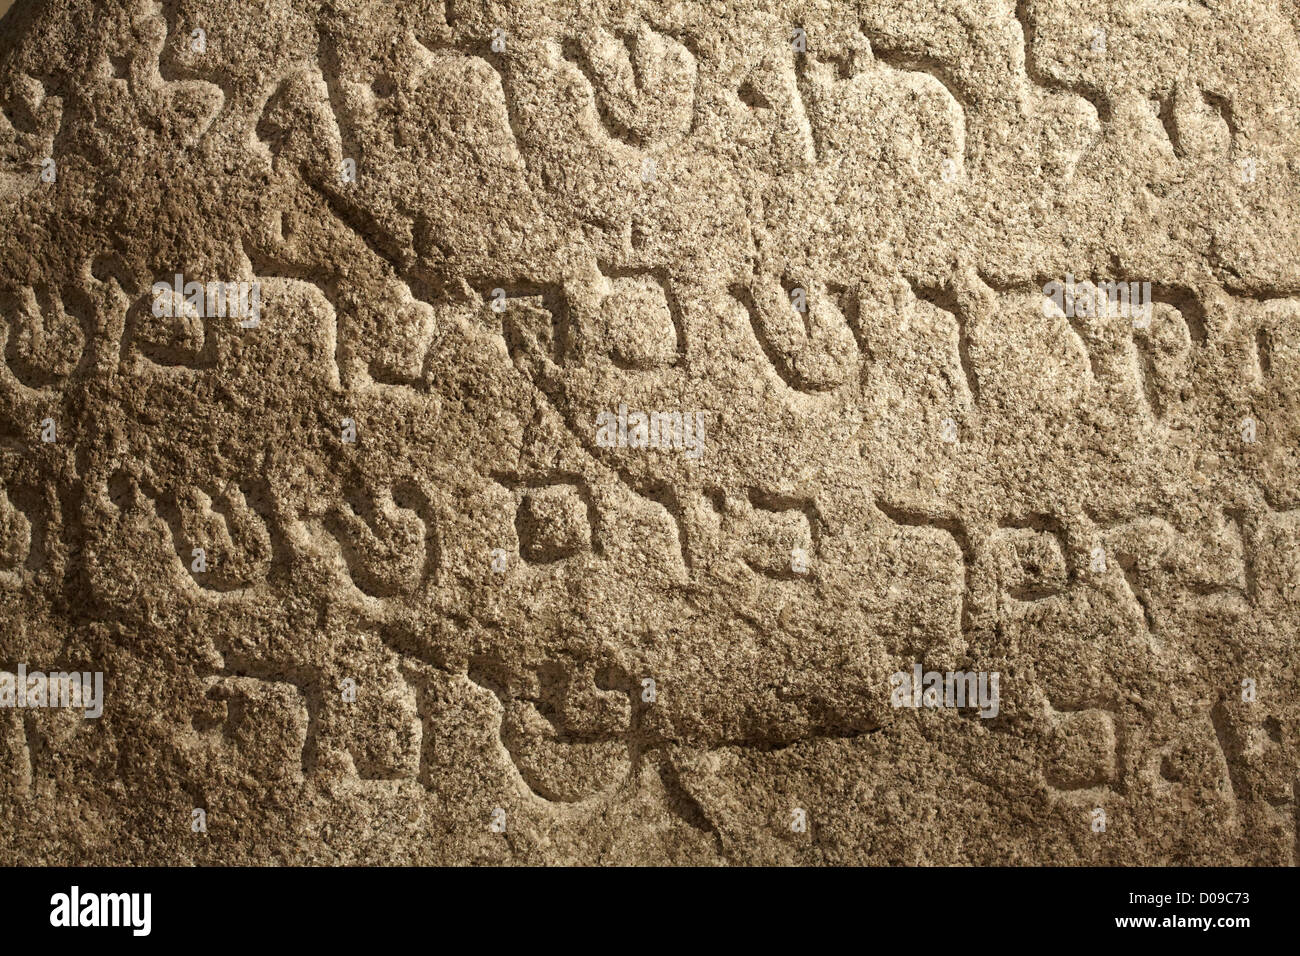 Anciennes Écritures juives sur la surface en pierre Banque D'Images